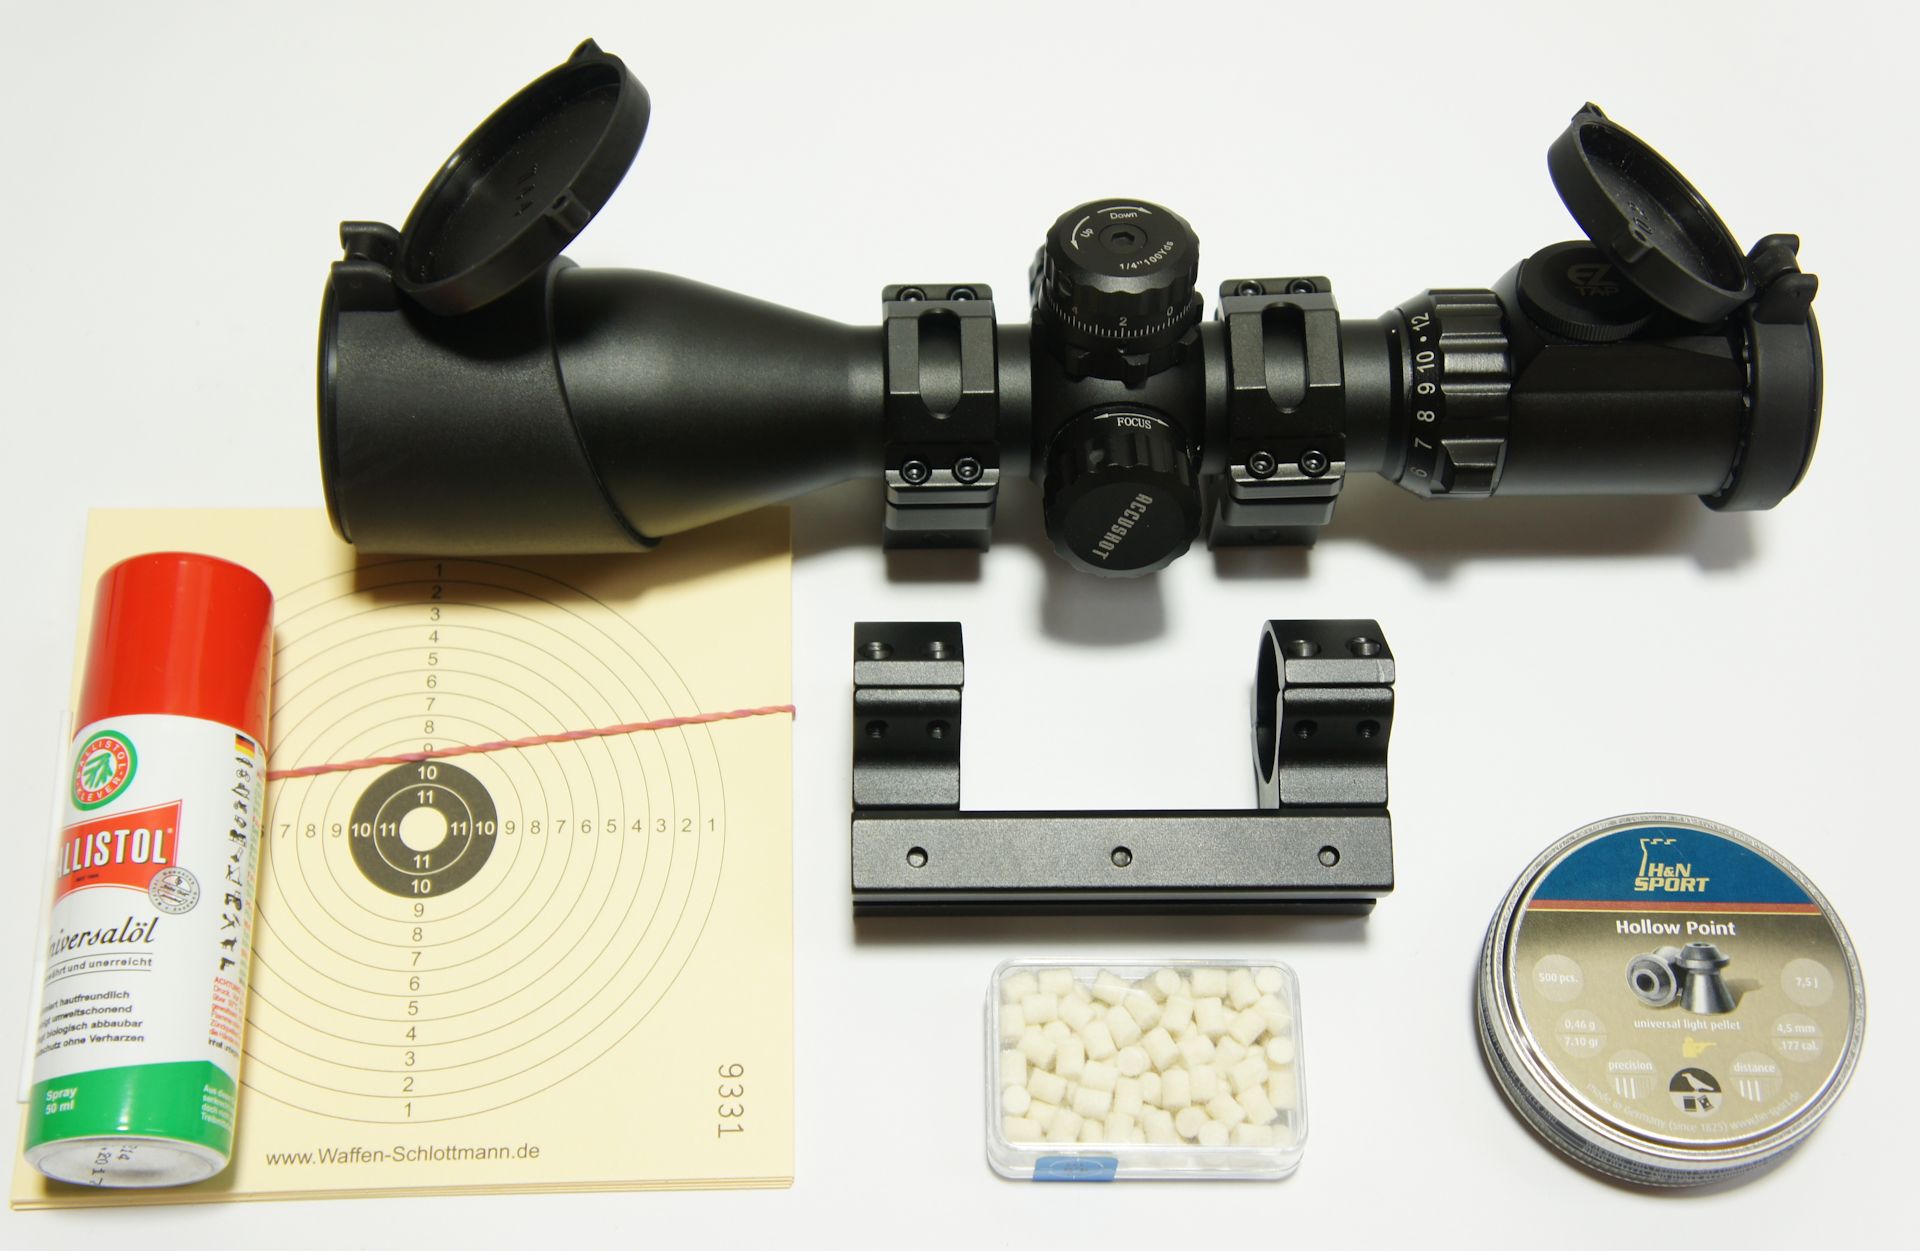 RTU Erweiterung auf Set mit Zielfernrohr UTG Compact 3-12x44 am Luftgewehr HW 77 + inkl. Montage und Einschießen